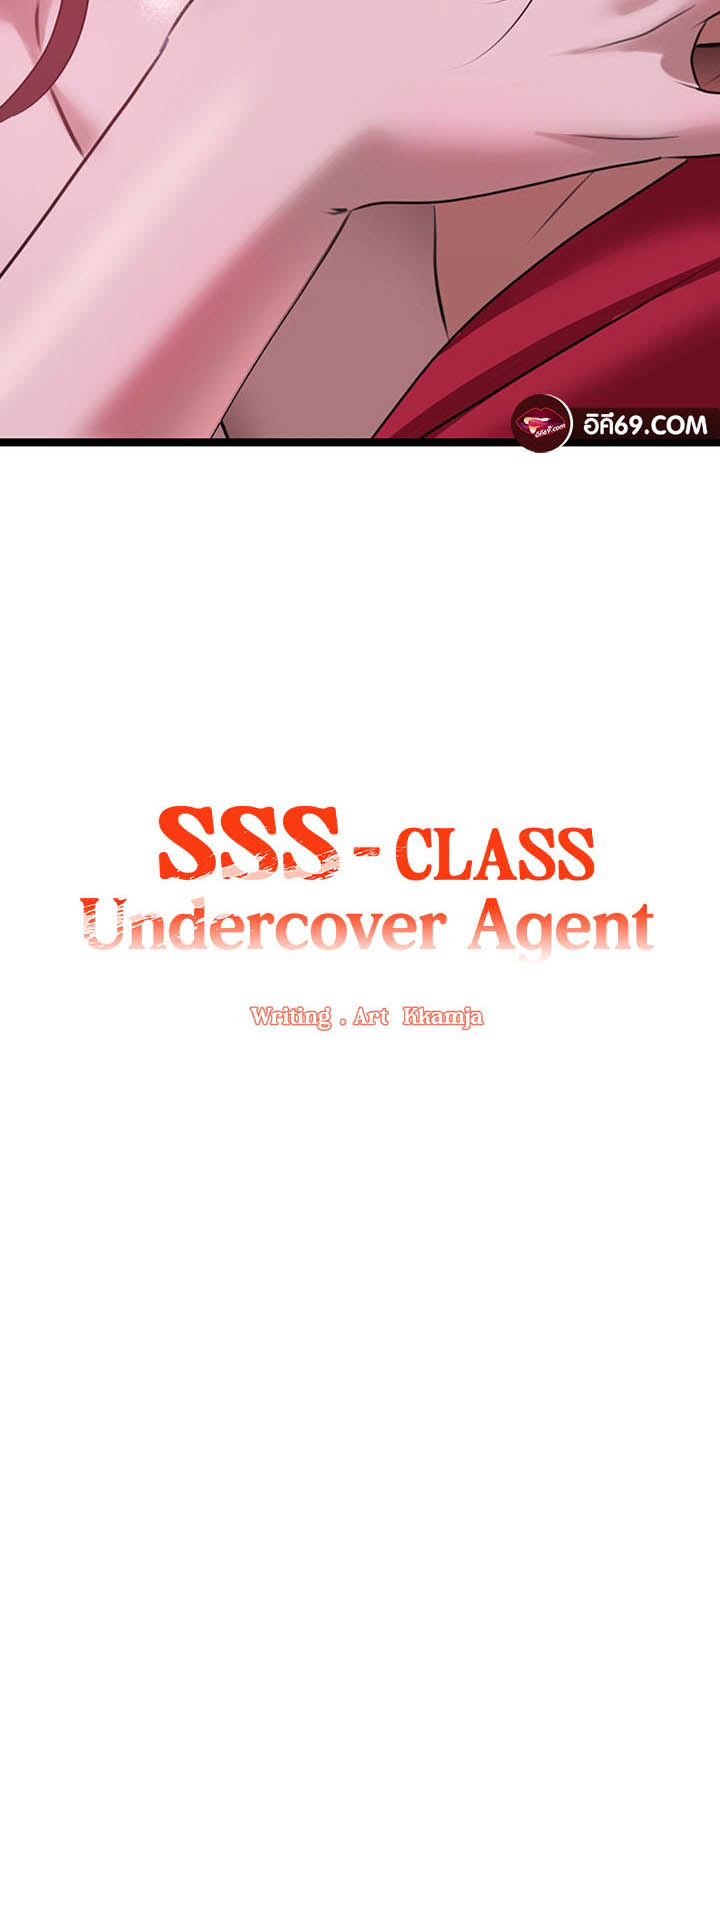 เธญเนเธฒเธเนเธ”เธเธดเธ เน€เธฃเธทเนเธญเธ SSS Class Undercover Agent 16 03